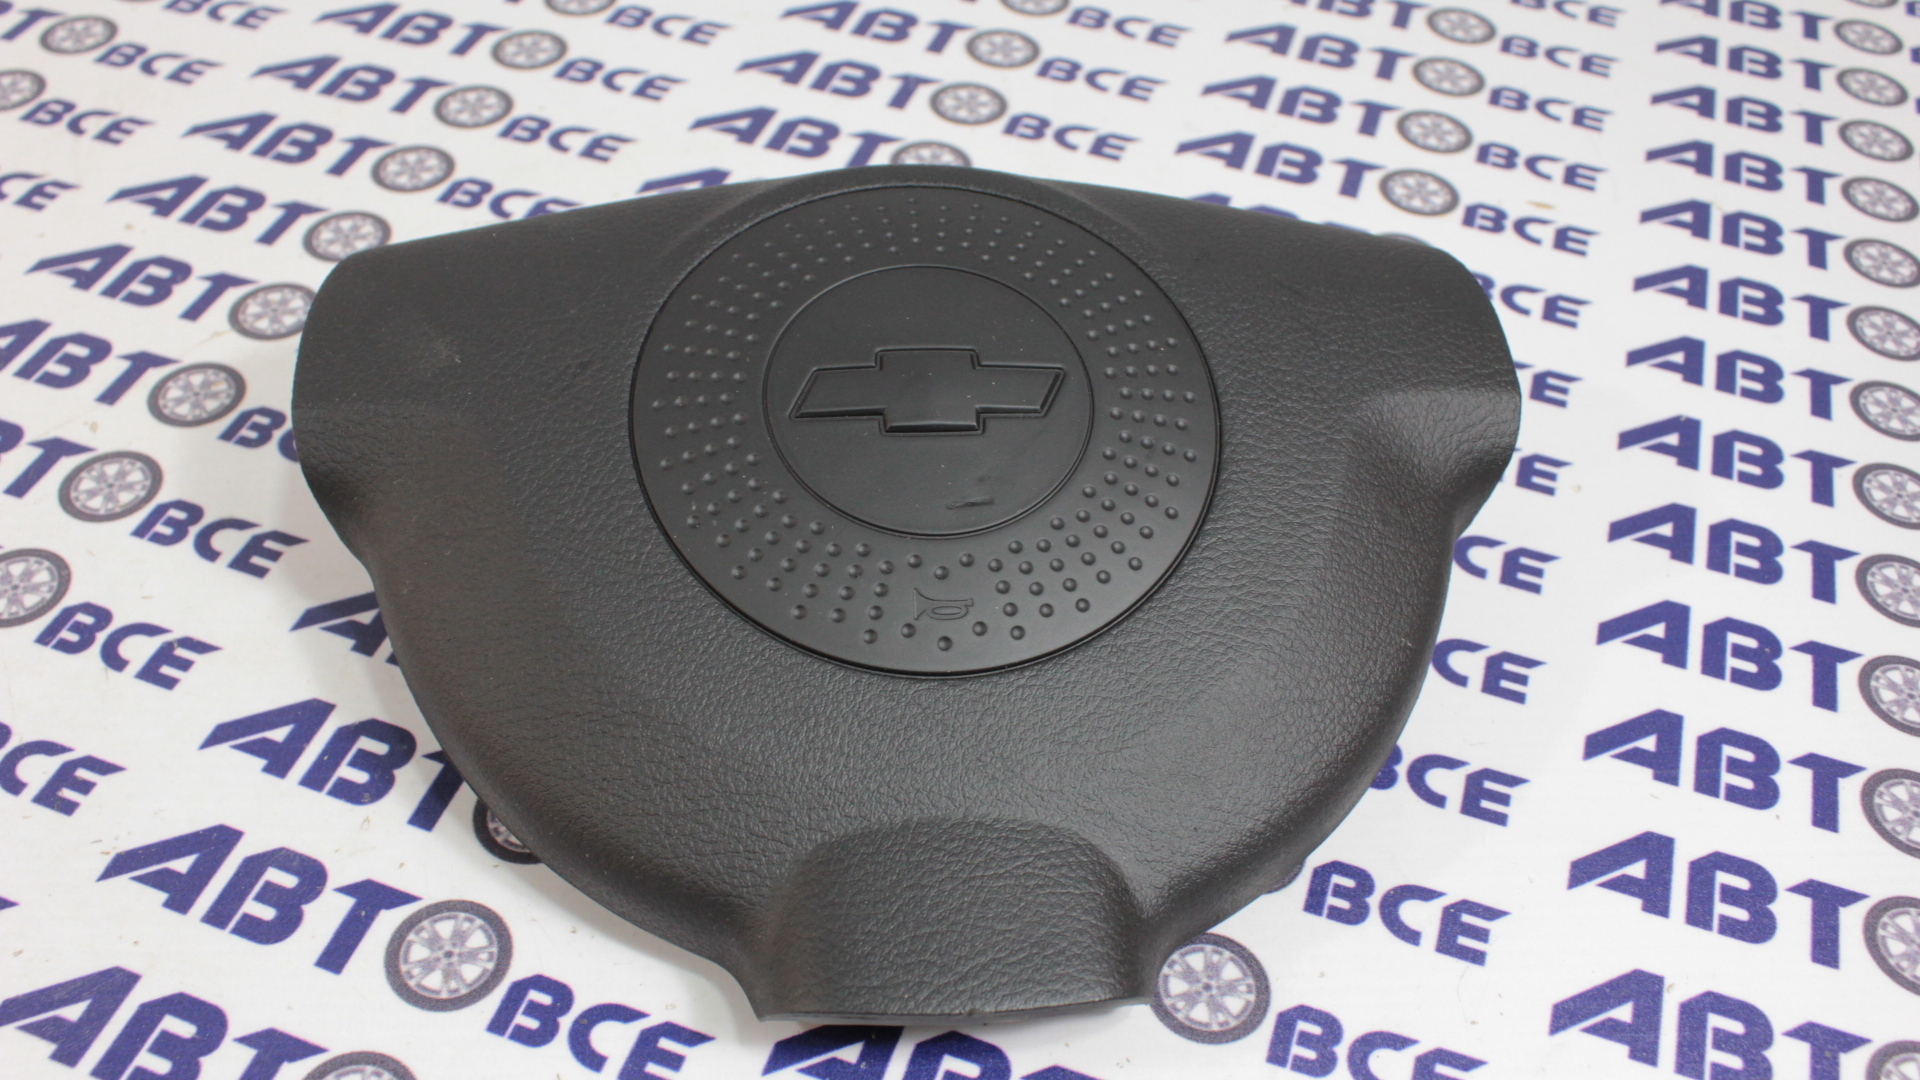 Крышка руля - кнопка сигнала - заглушка муляж Airbag (в руль) Lacetti GM